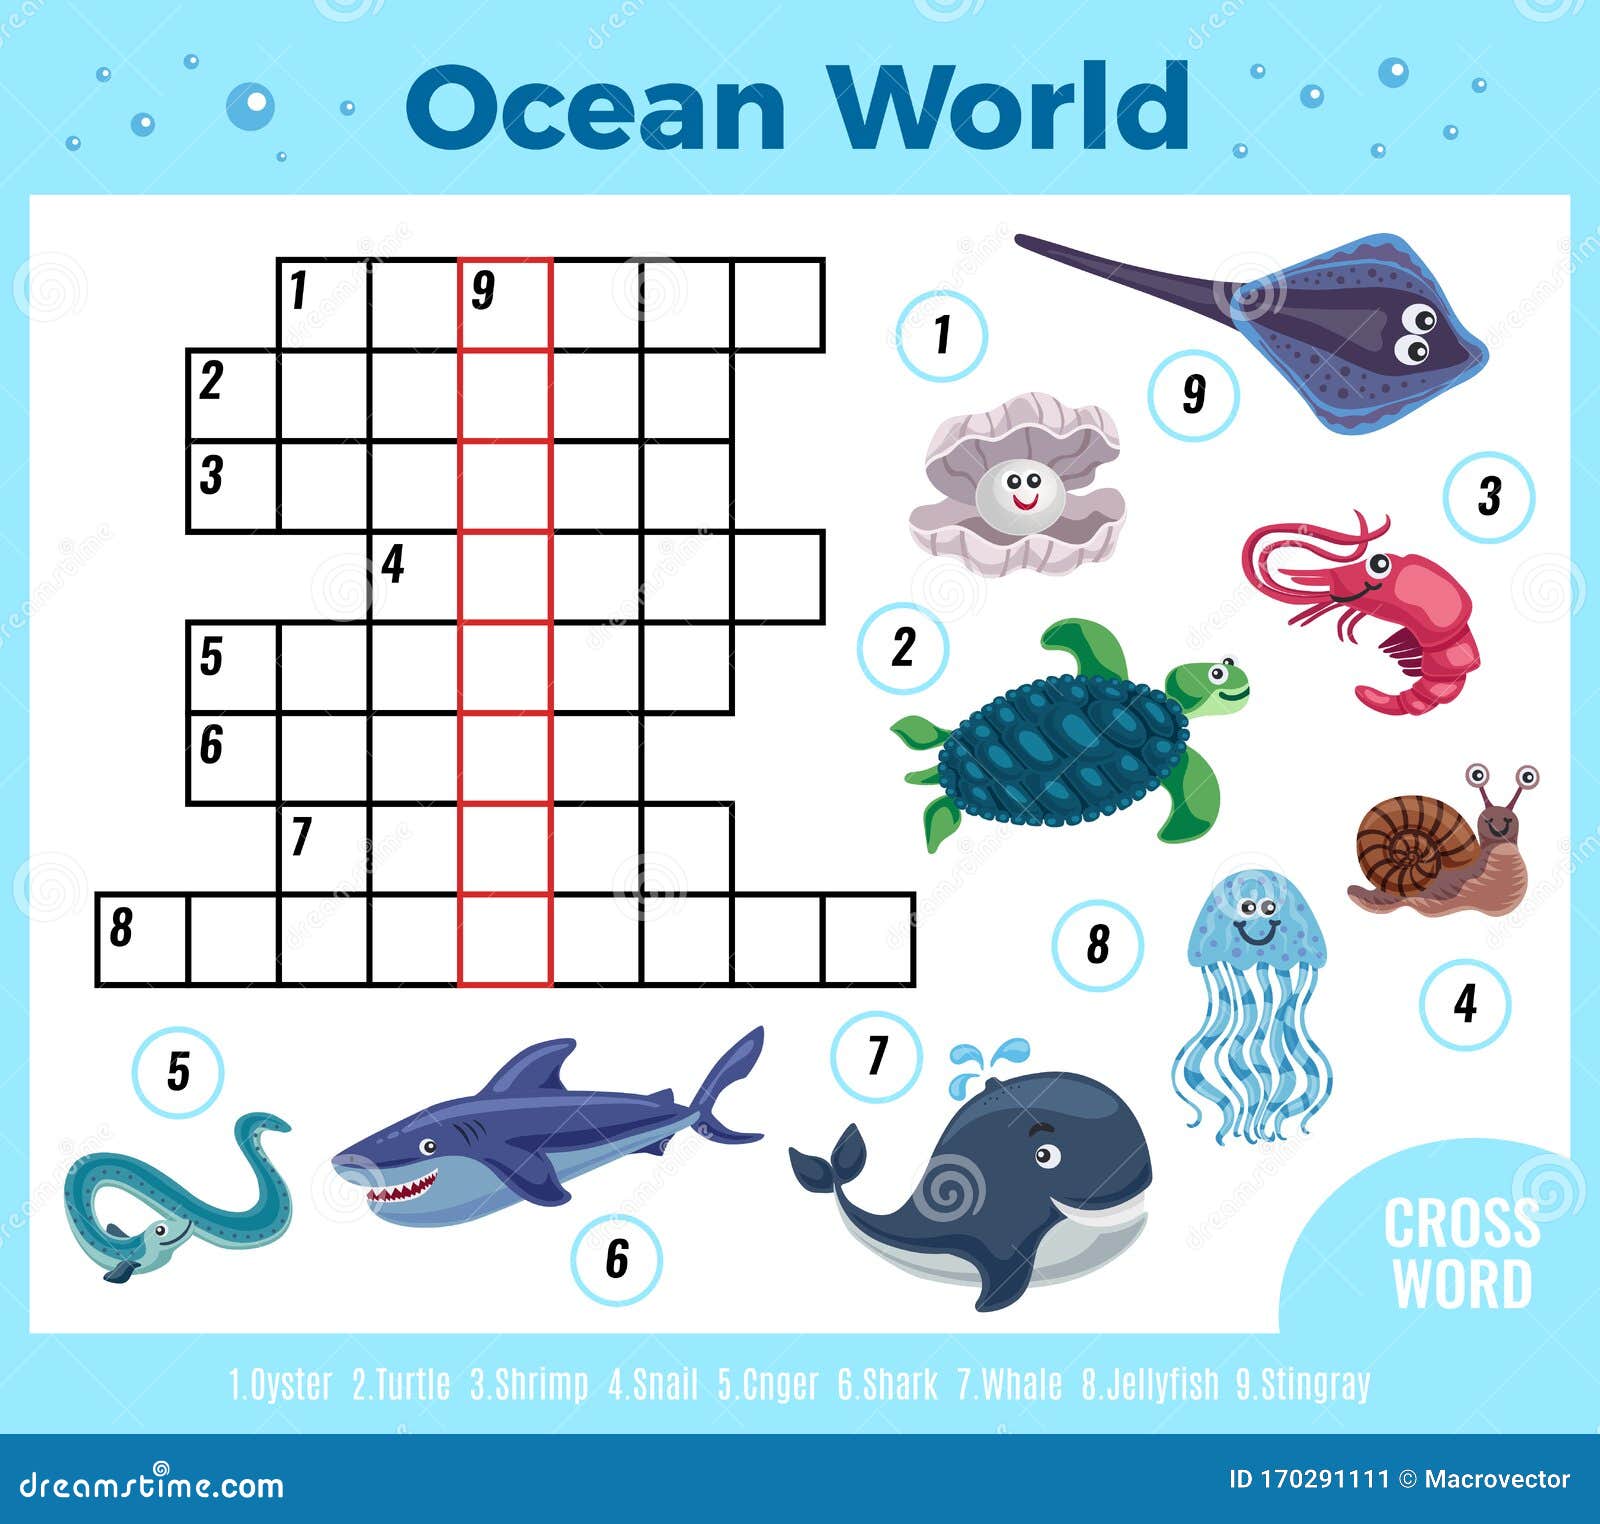 52 Sea Cow Crossword - Crossword Clue